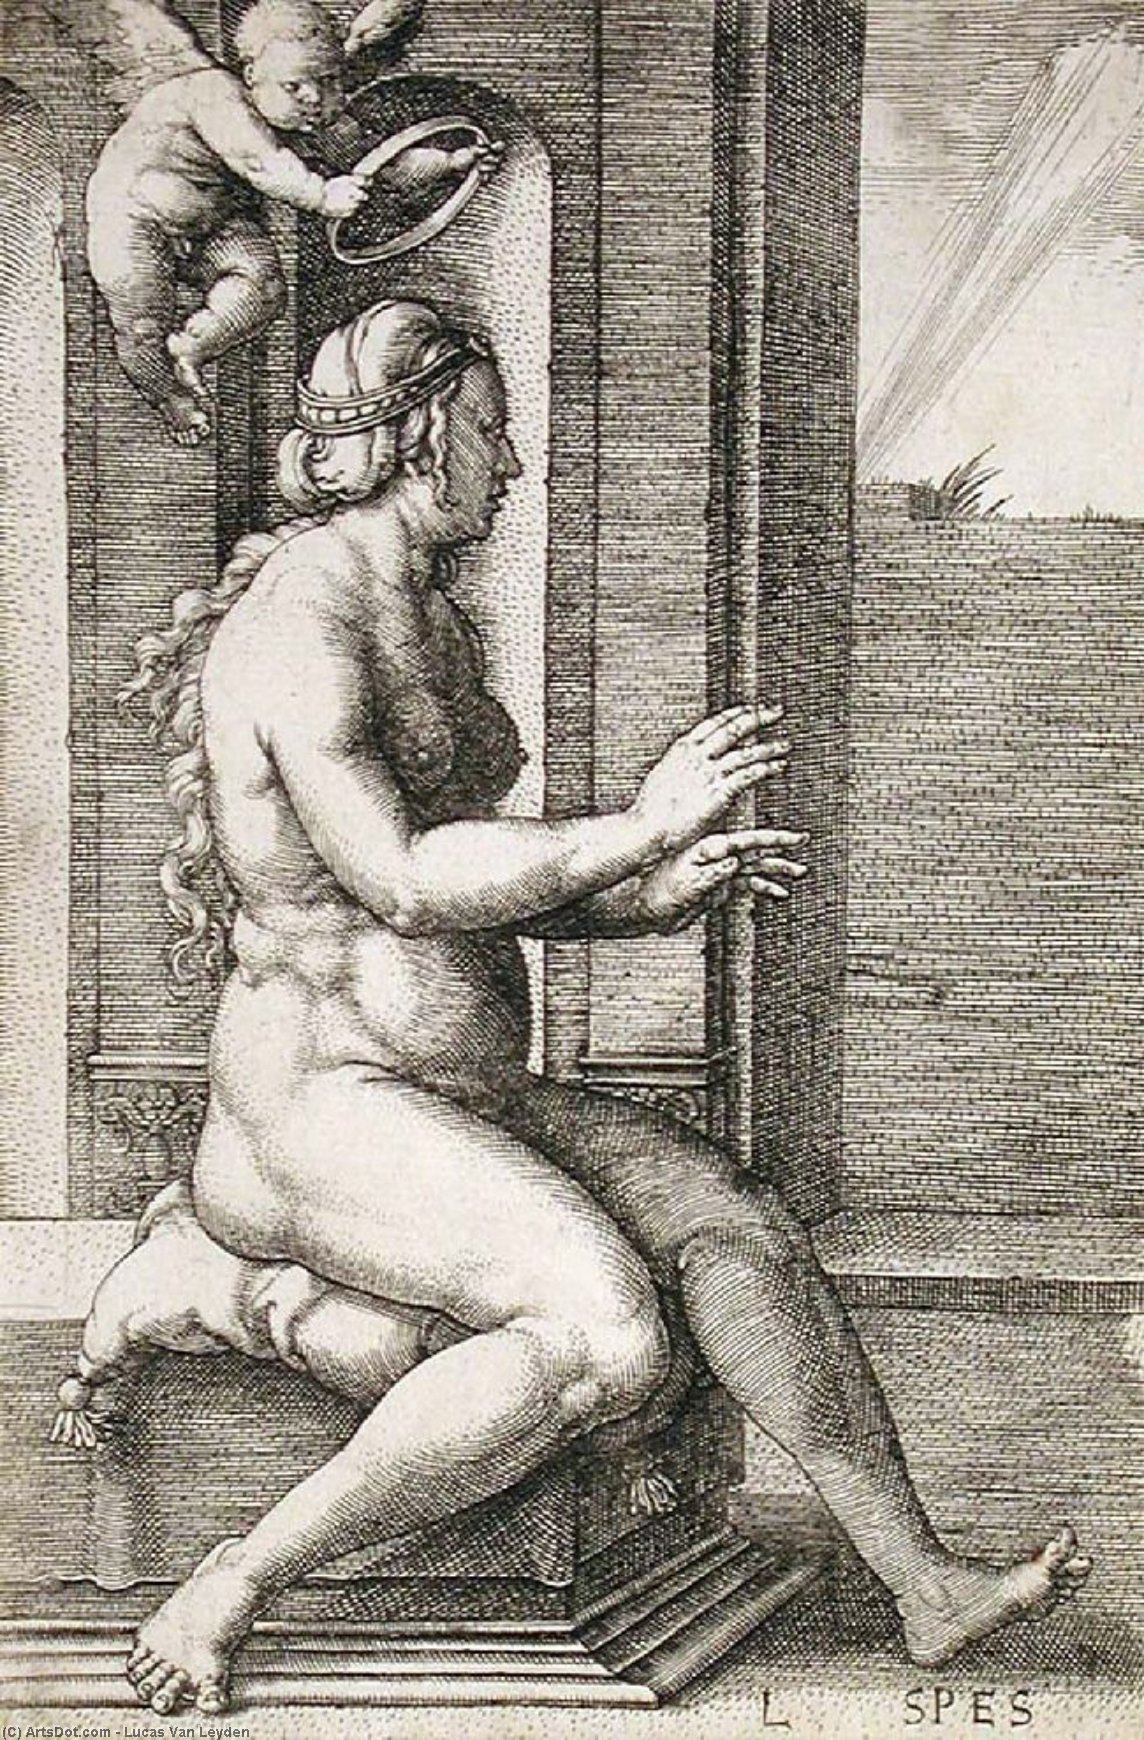 WikiOO.org - Encyclopedia of Fine Arts - Maleri, Artwork Lucas Van Leyden - Spes (Hope)